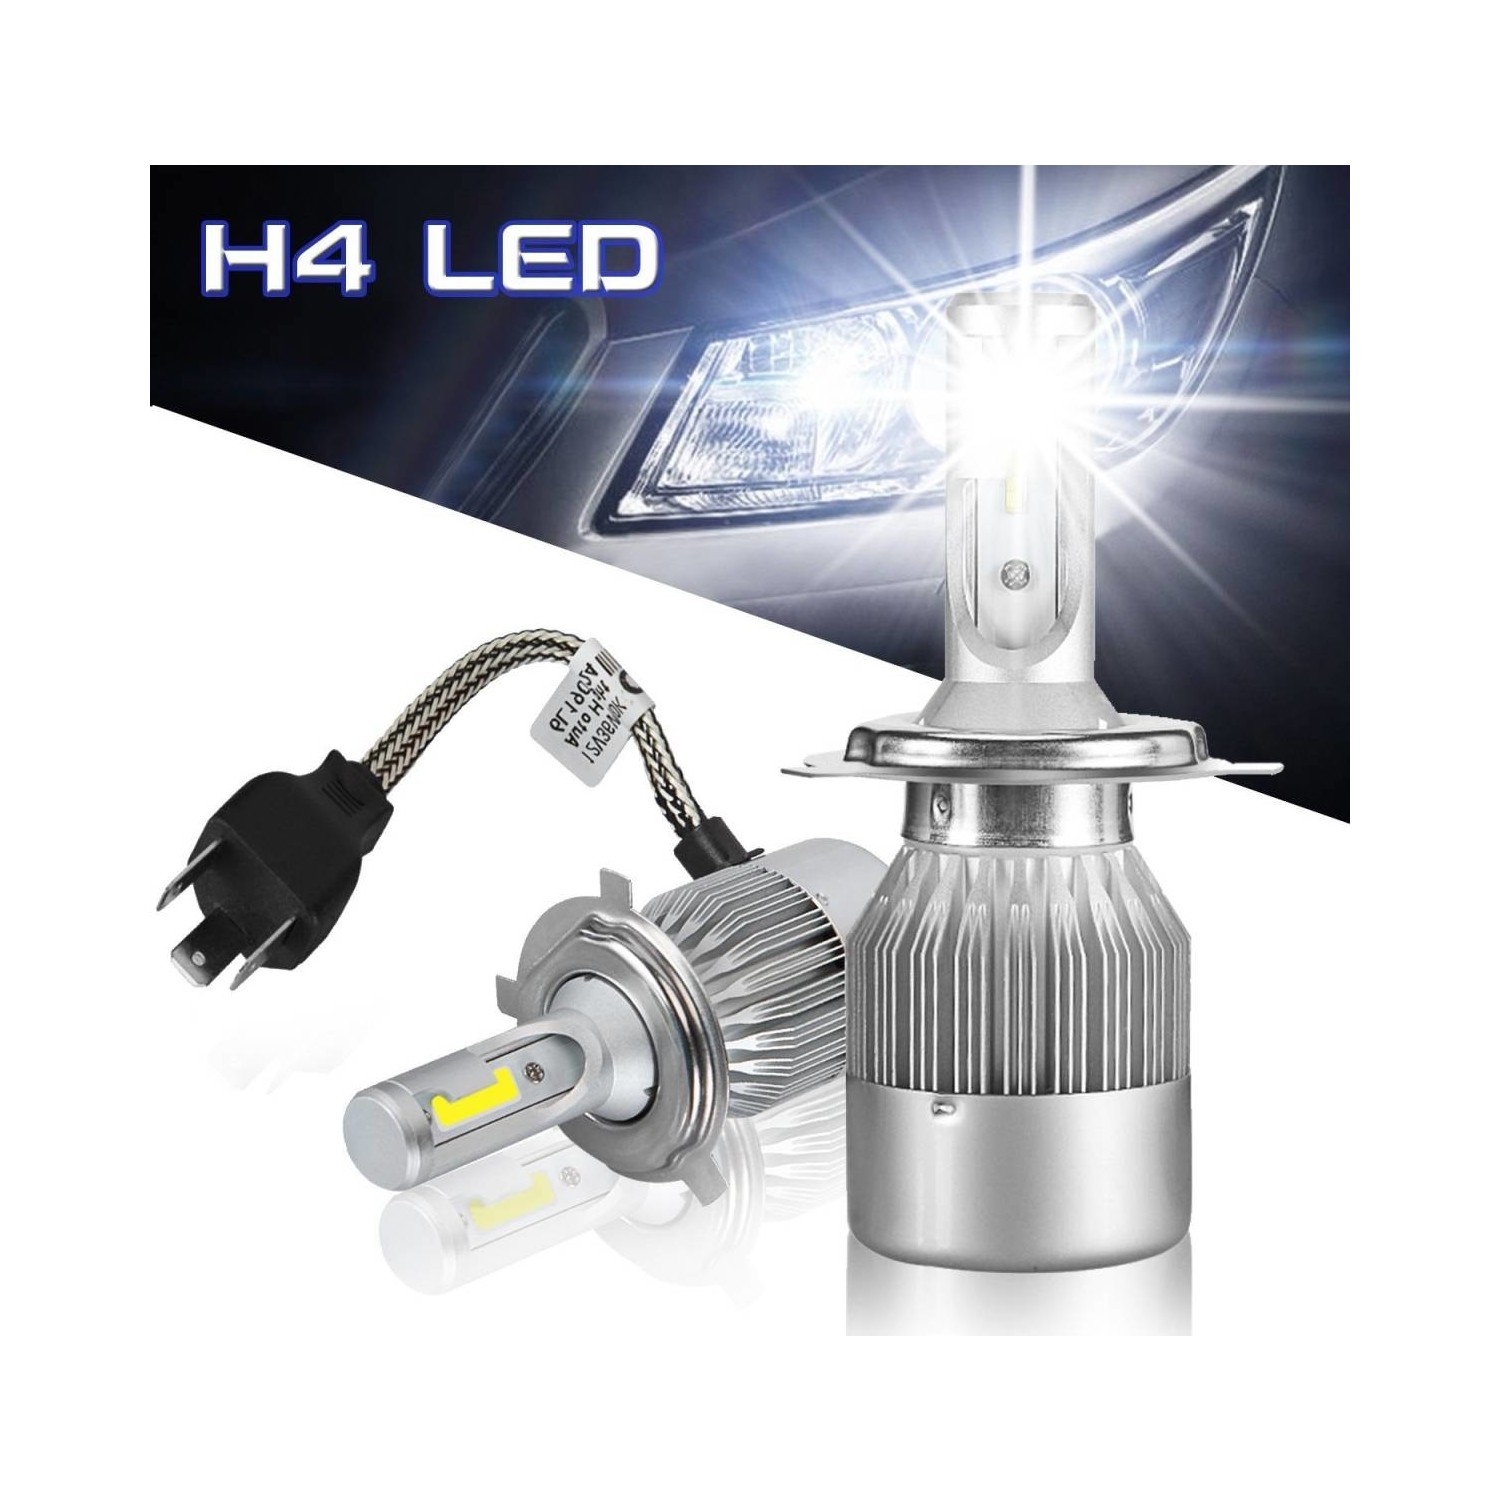 Светильник светодиодный ксенон. C9 super led Headlight h4. C6 led Headlight h4. C6 led Headlight 36w/3800lm h7. Led Xenon h7.